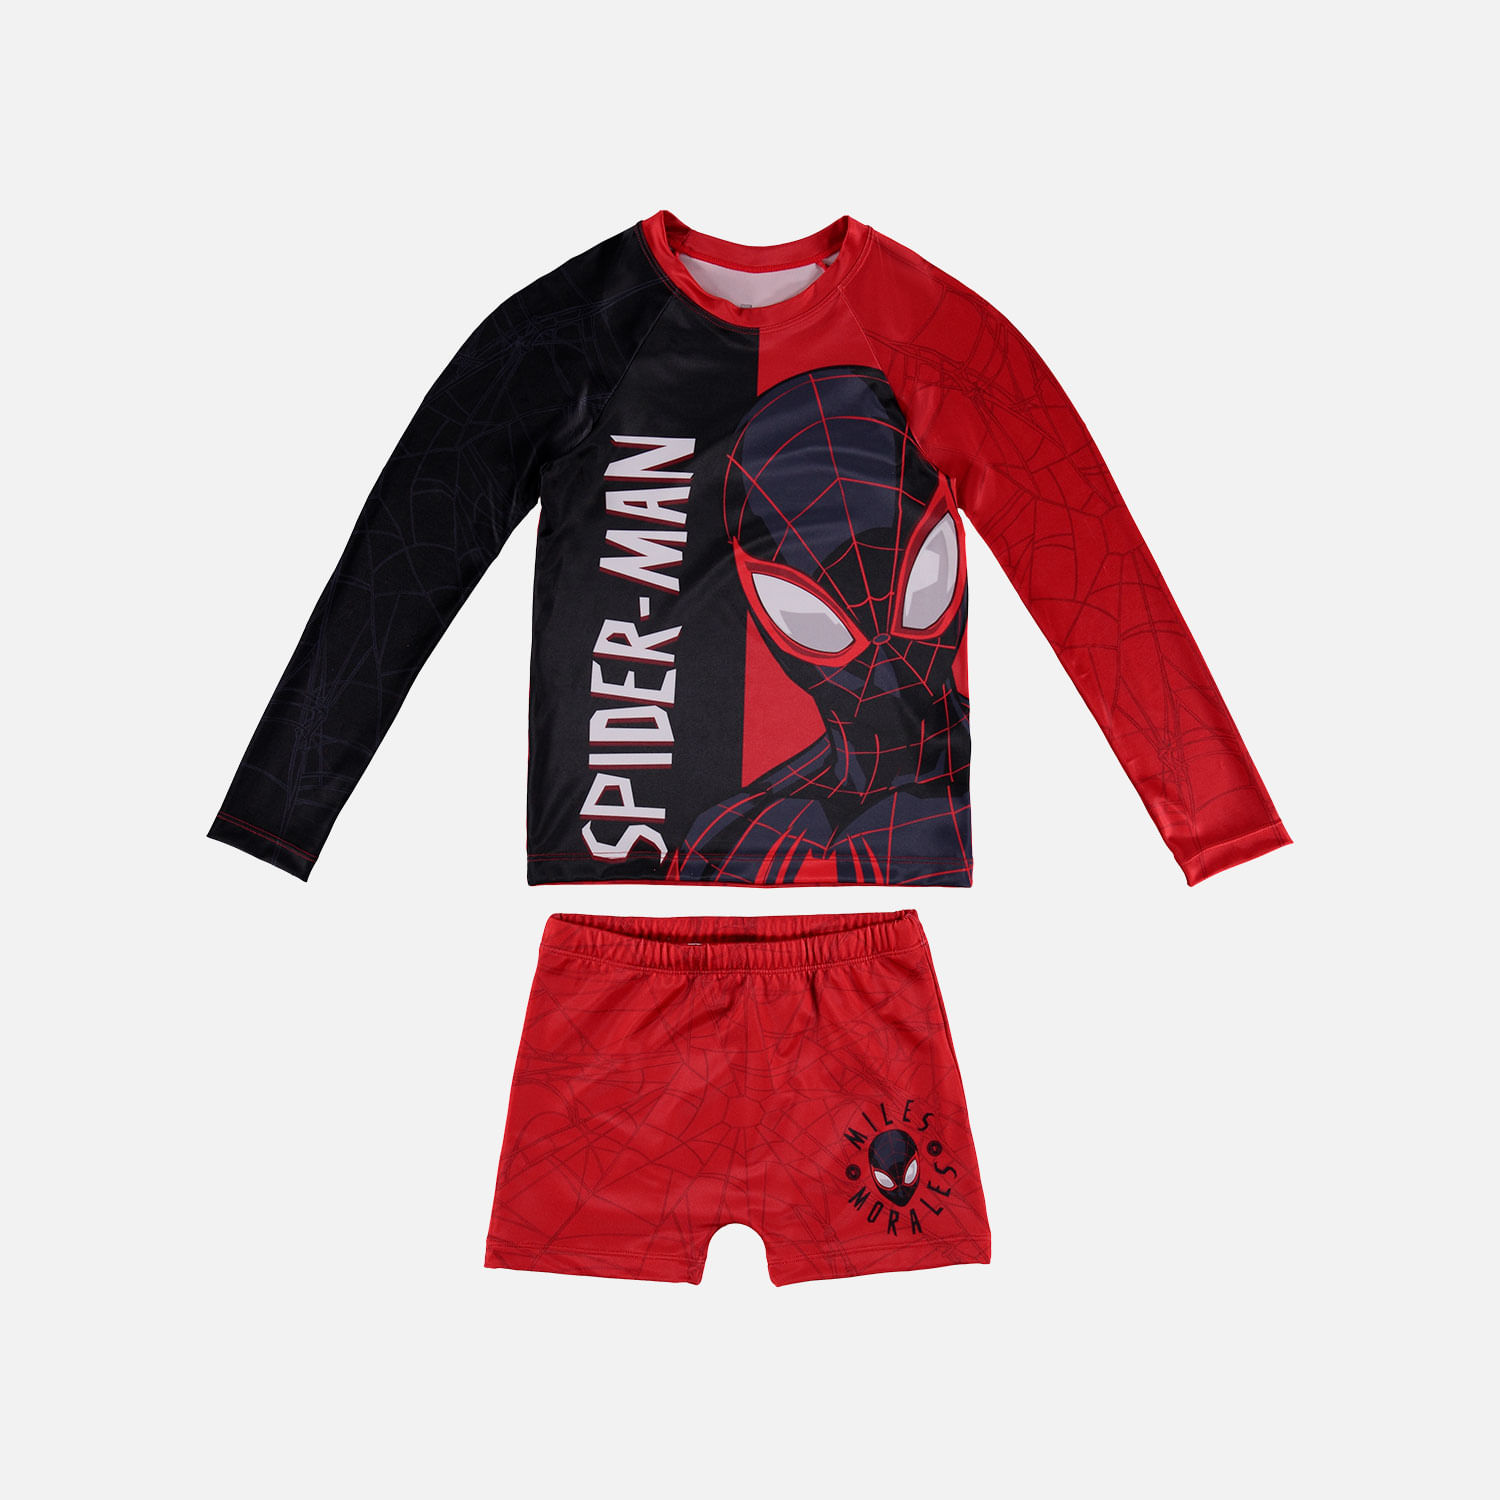 Idear Embotellamiento Excesivo Conjunto de baño Spiderman rojo y negro manga larga para niño